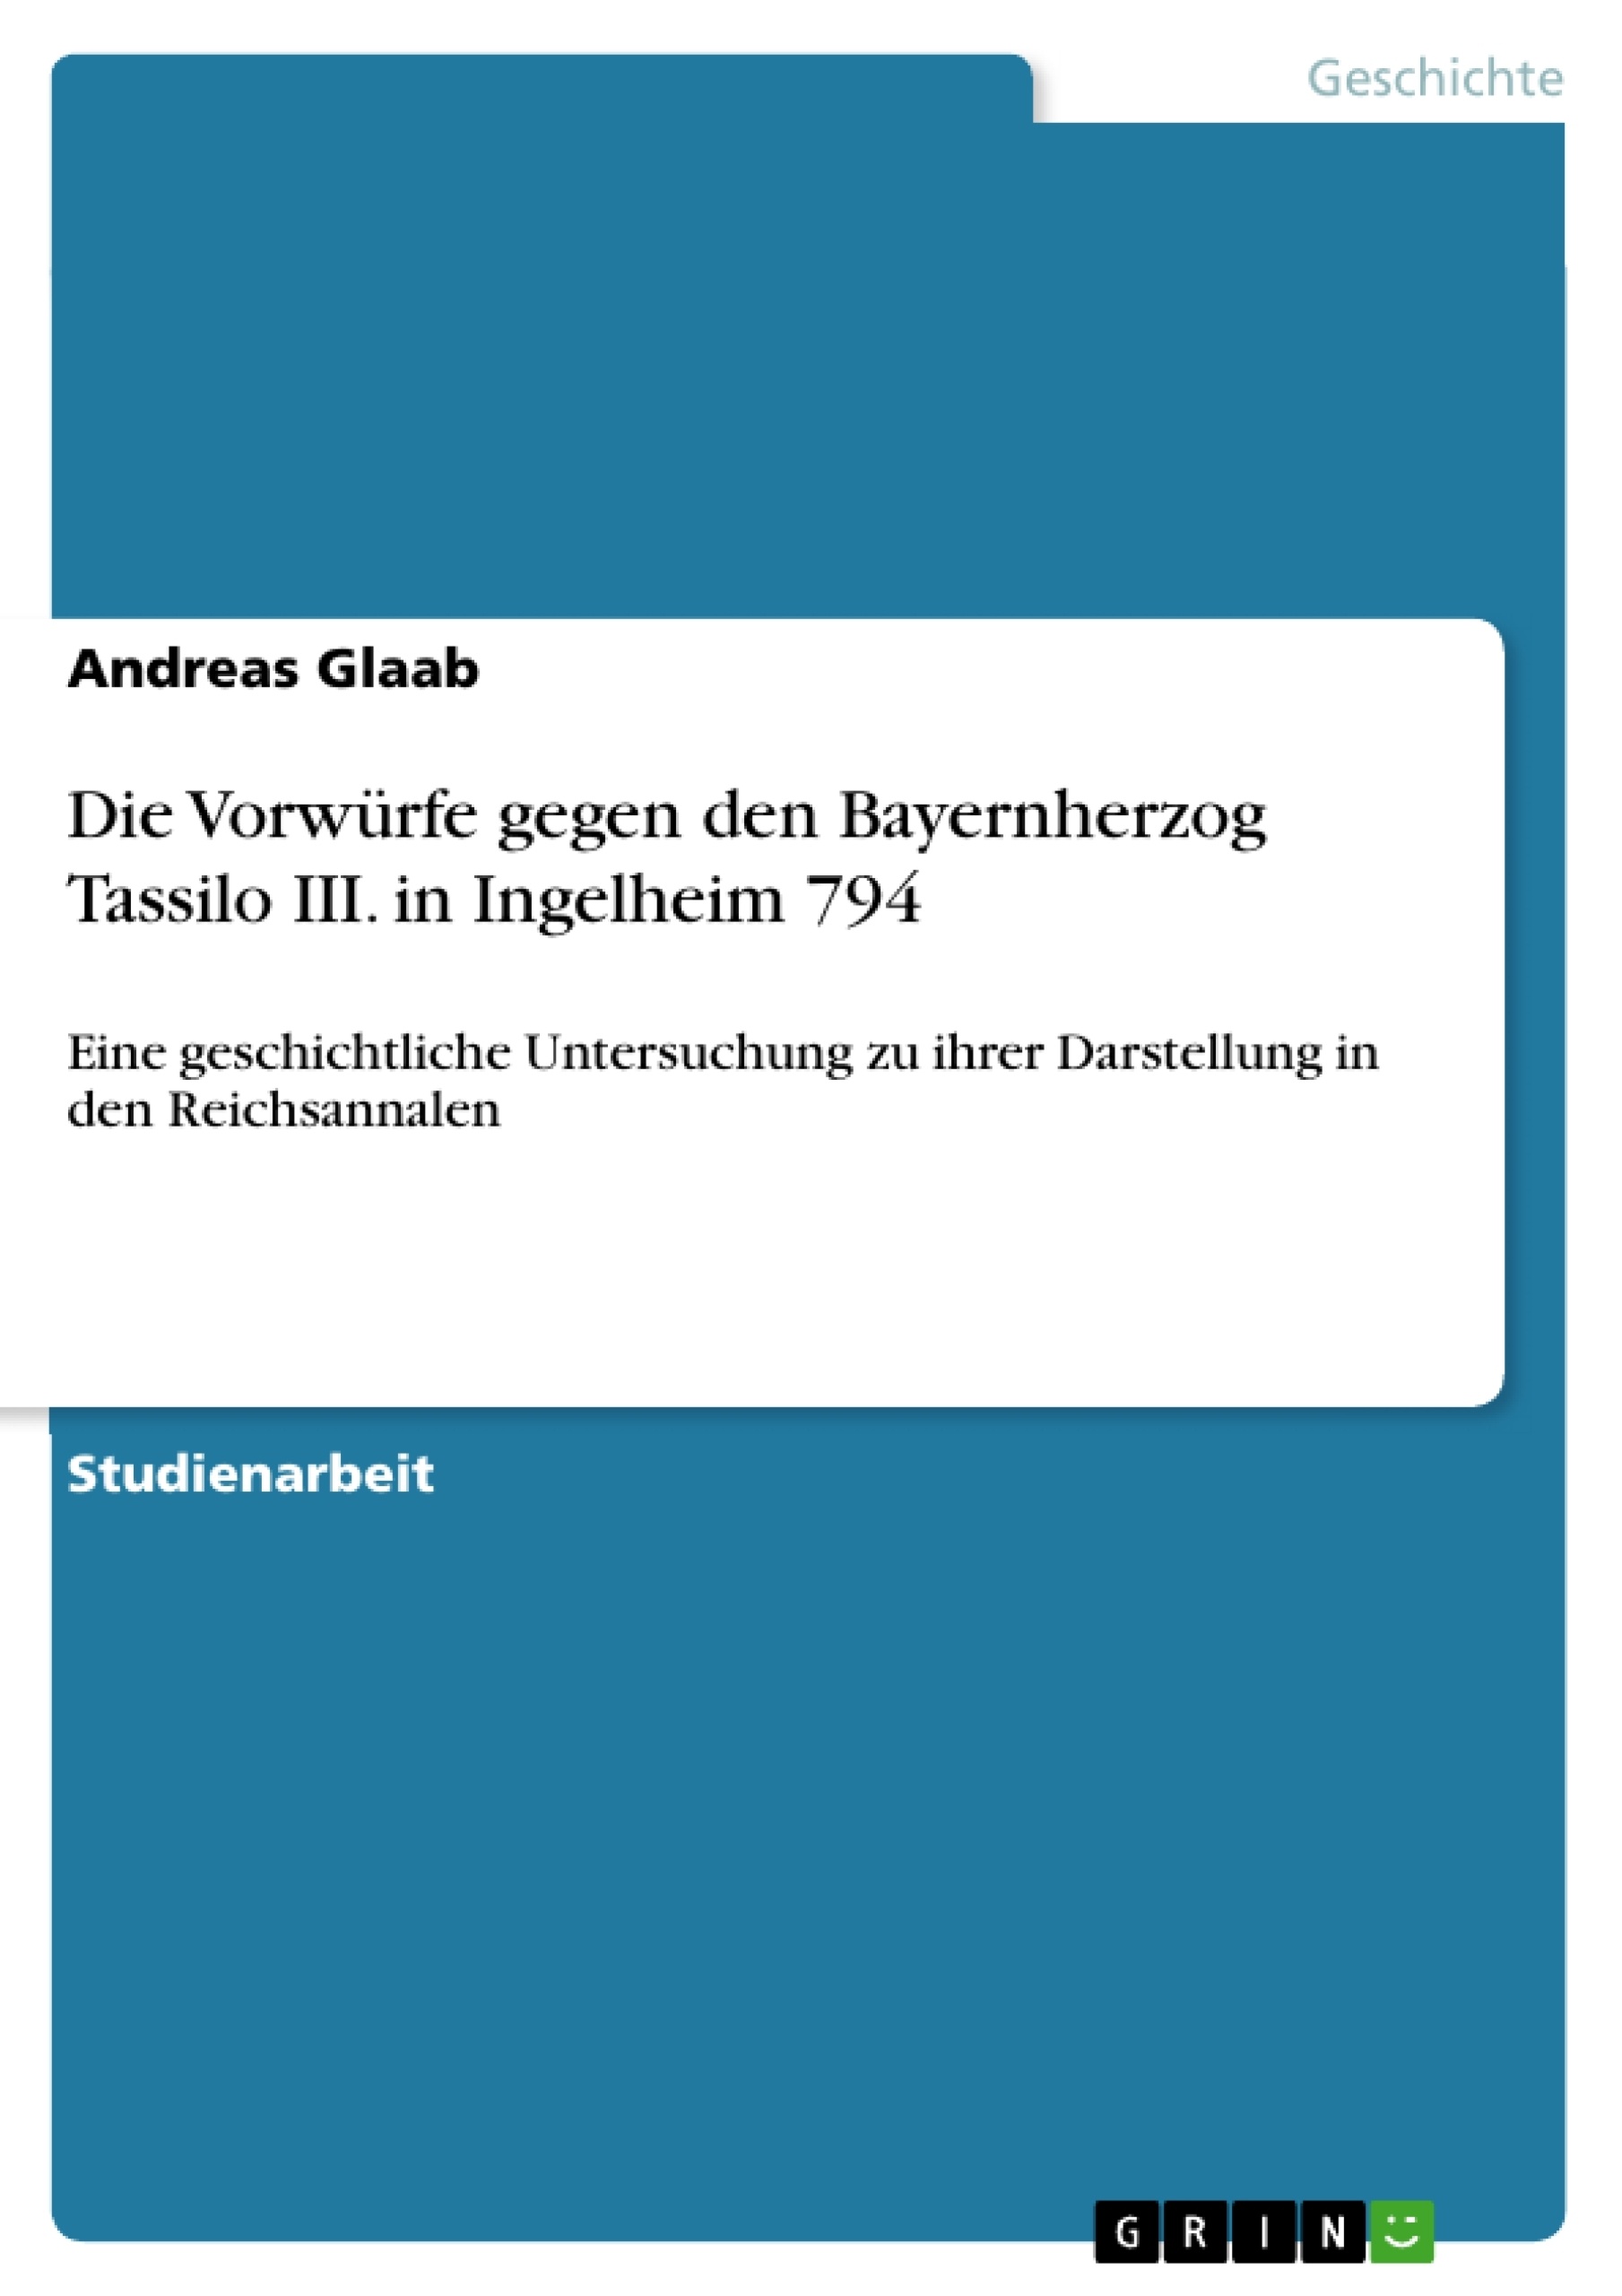 Title: Die Vorwürfe gegen den Bayernherzog Tassilo III. in Ingelheim 794